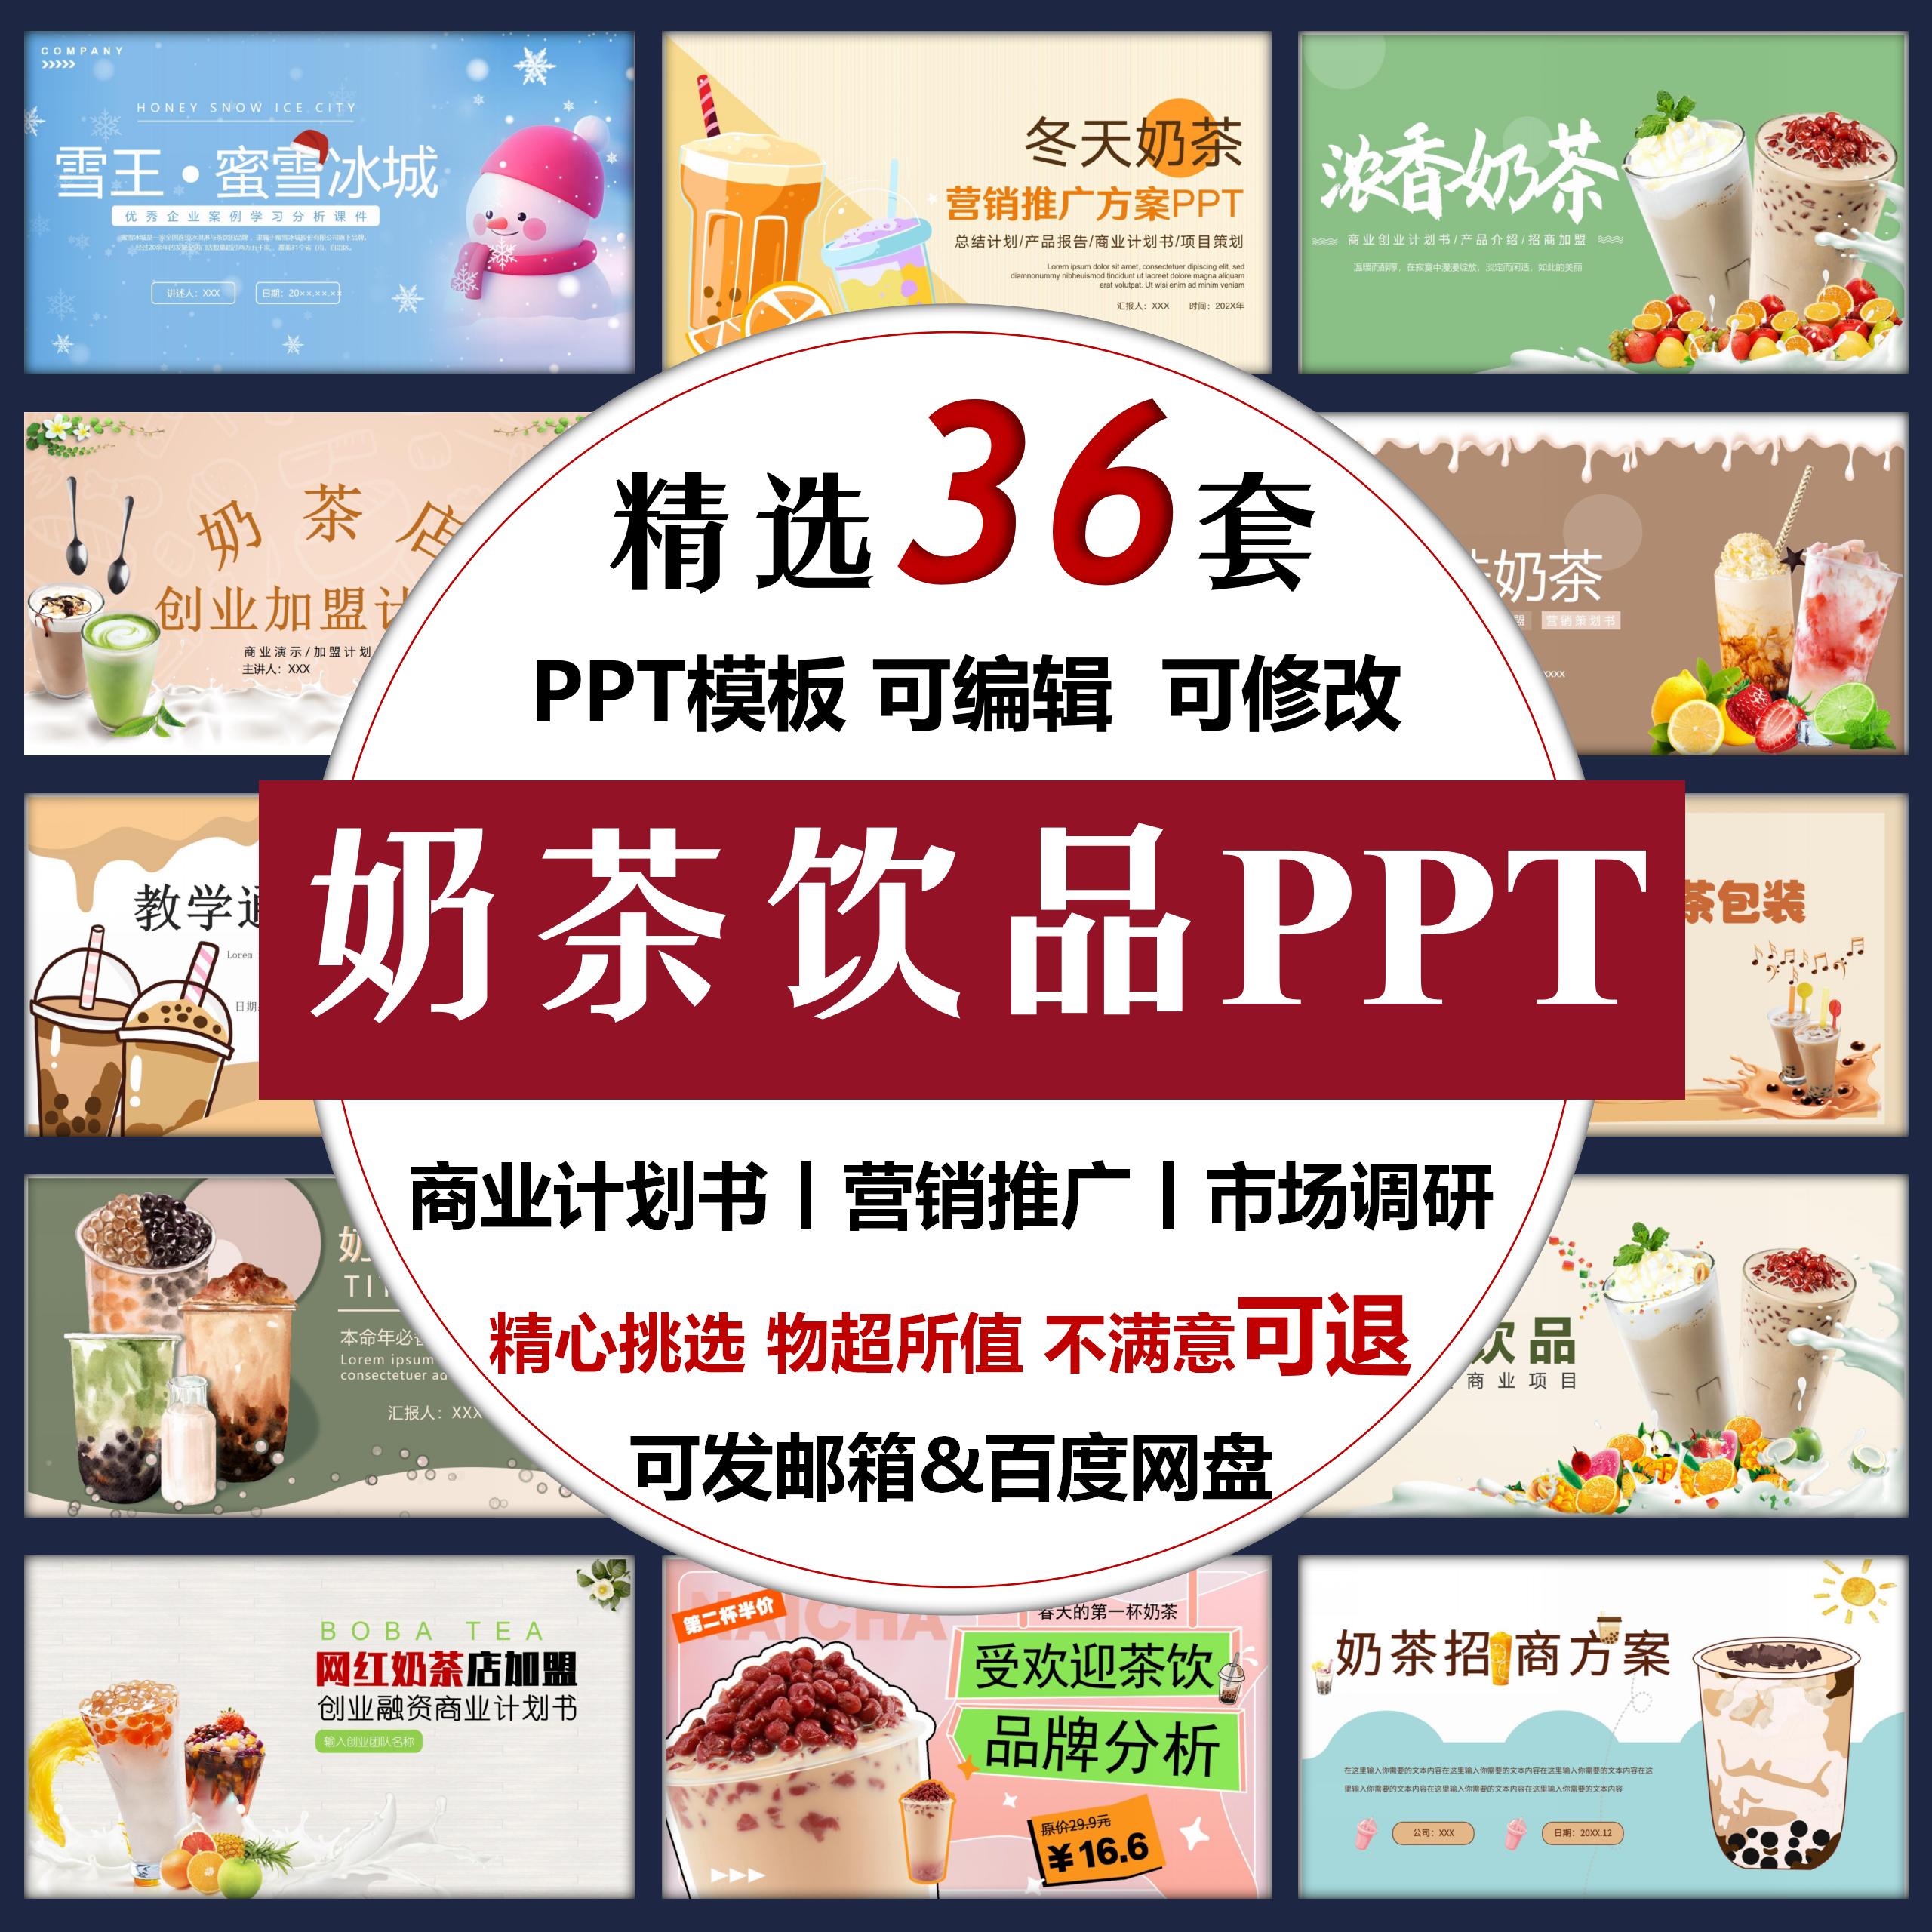 奶茶ppt模板 商业计划书 奶茶店招商加盟 创业开店 奶茶市场调研